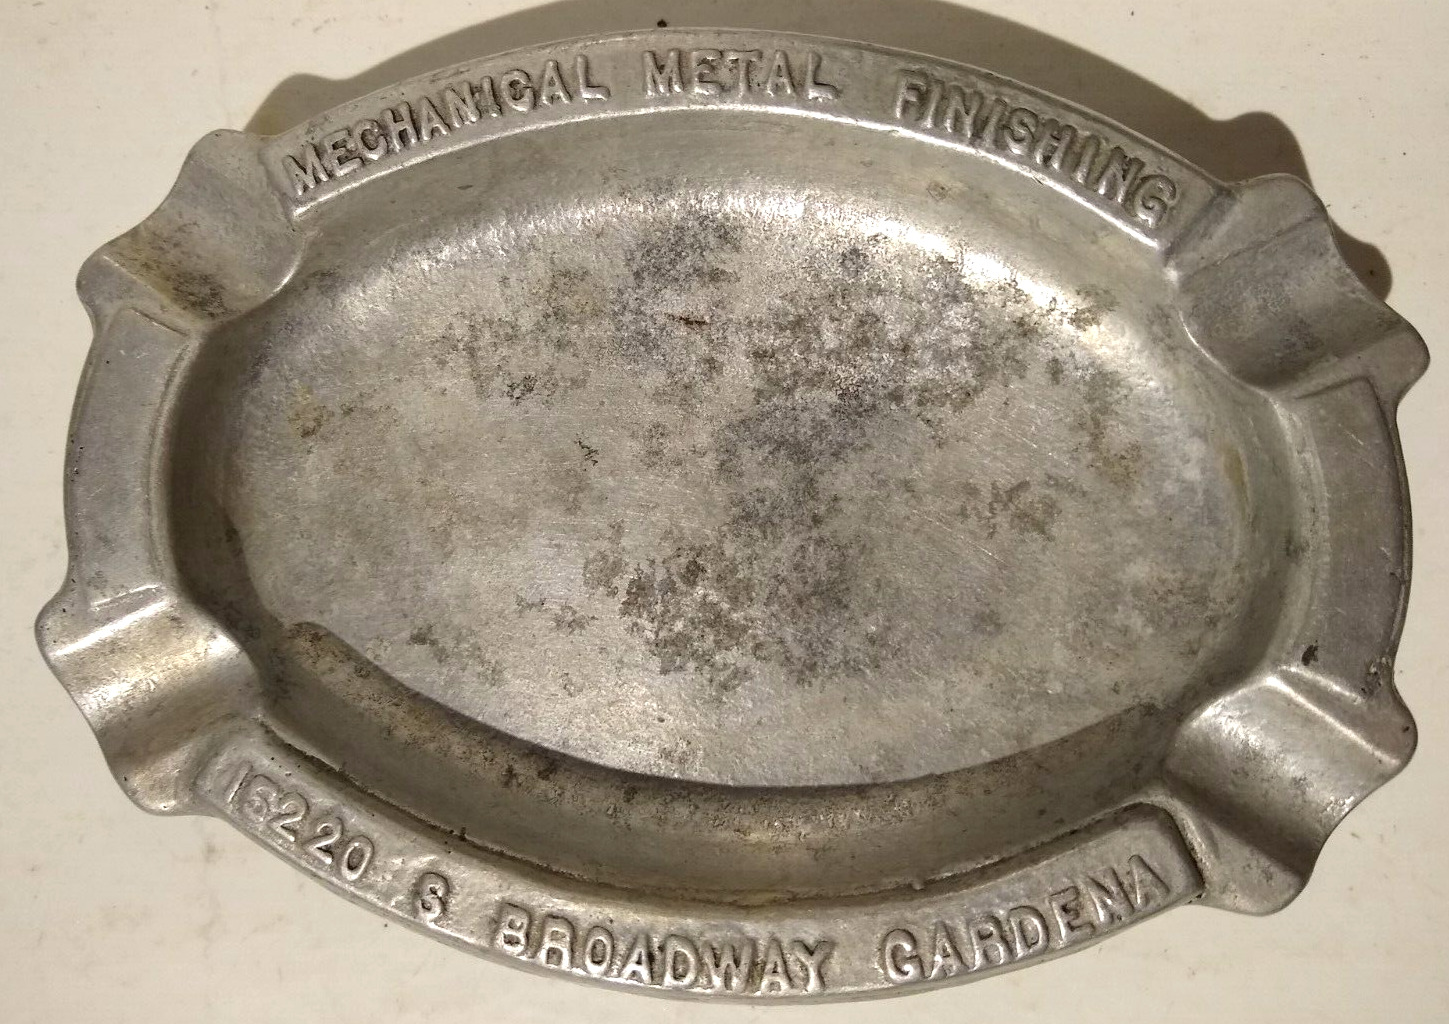 Vintage Ashtray Advertising Mechanical Metal Finishing 15220 S Broadway Gardena